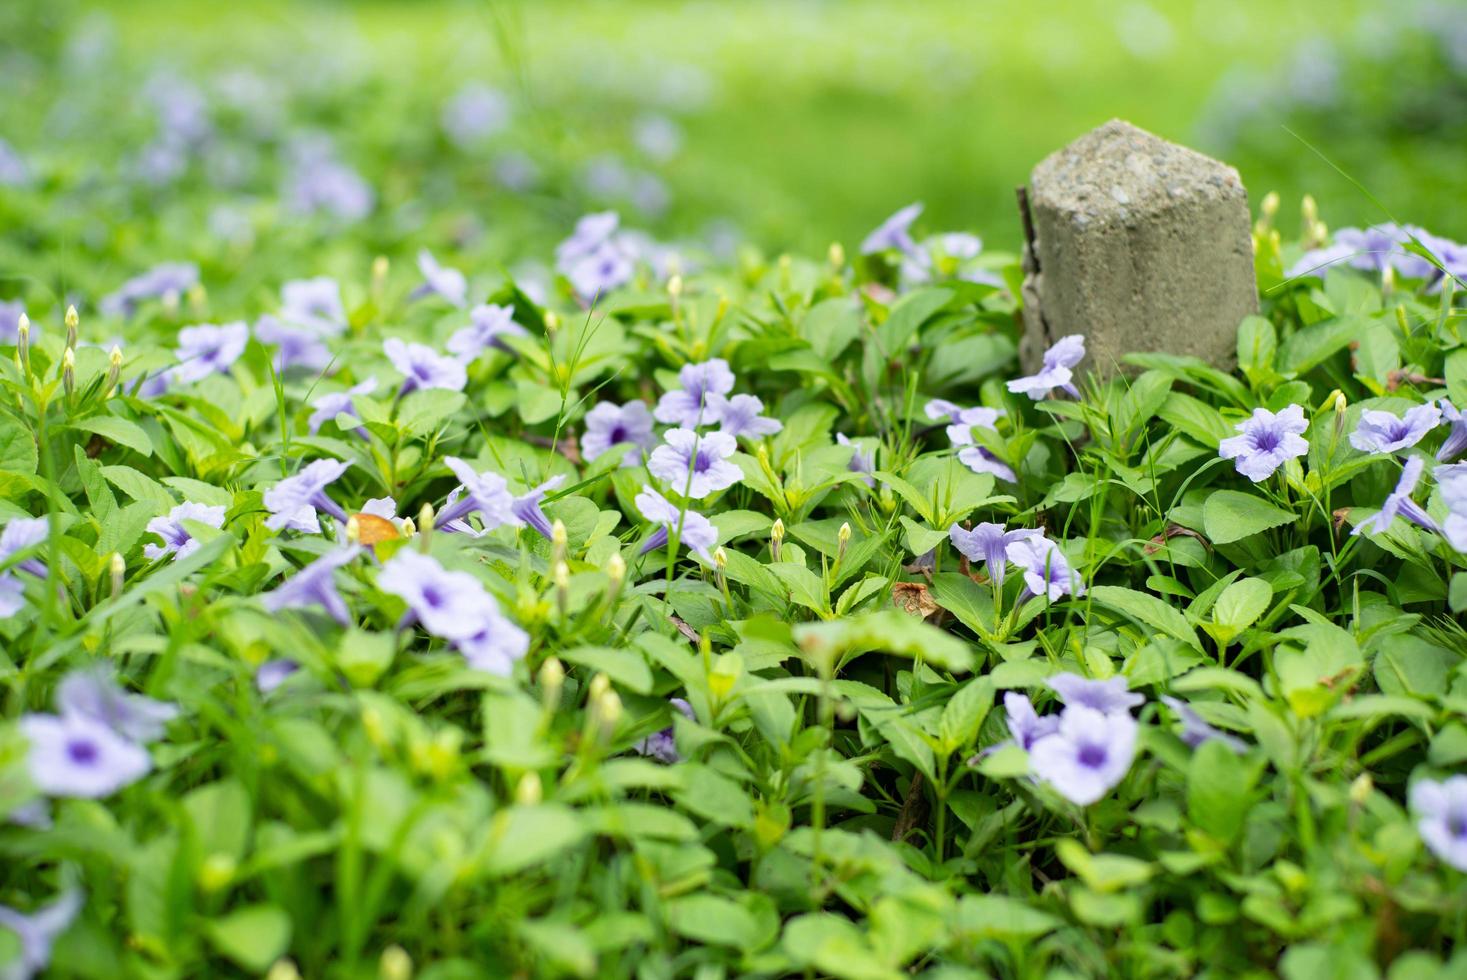 Mise au point sélective sur les petites fleurs violettes avec poteau de béton flou en arrière-plan photo